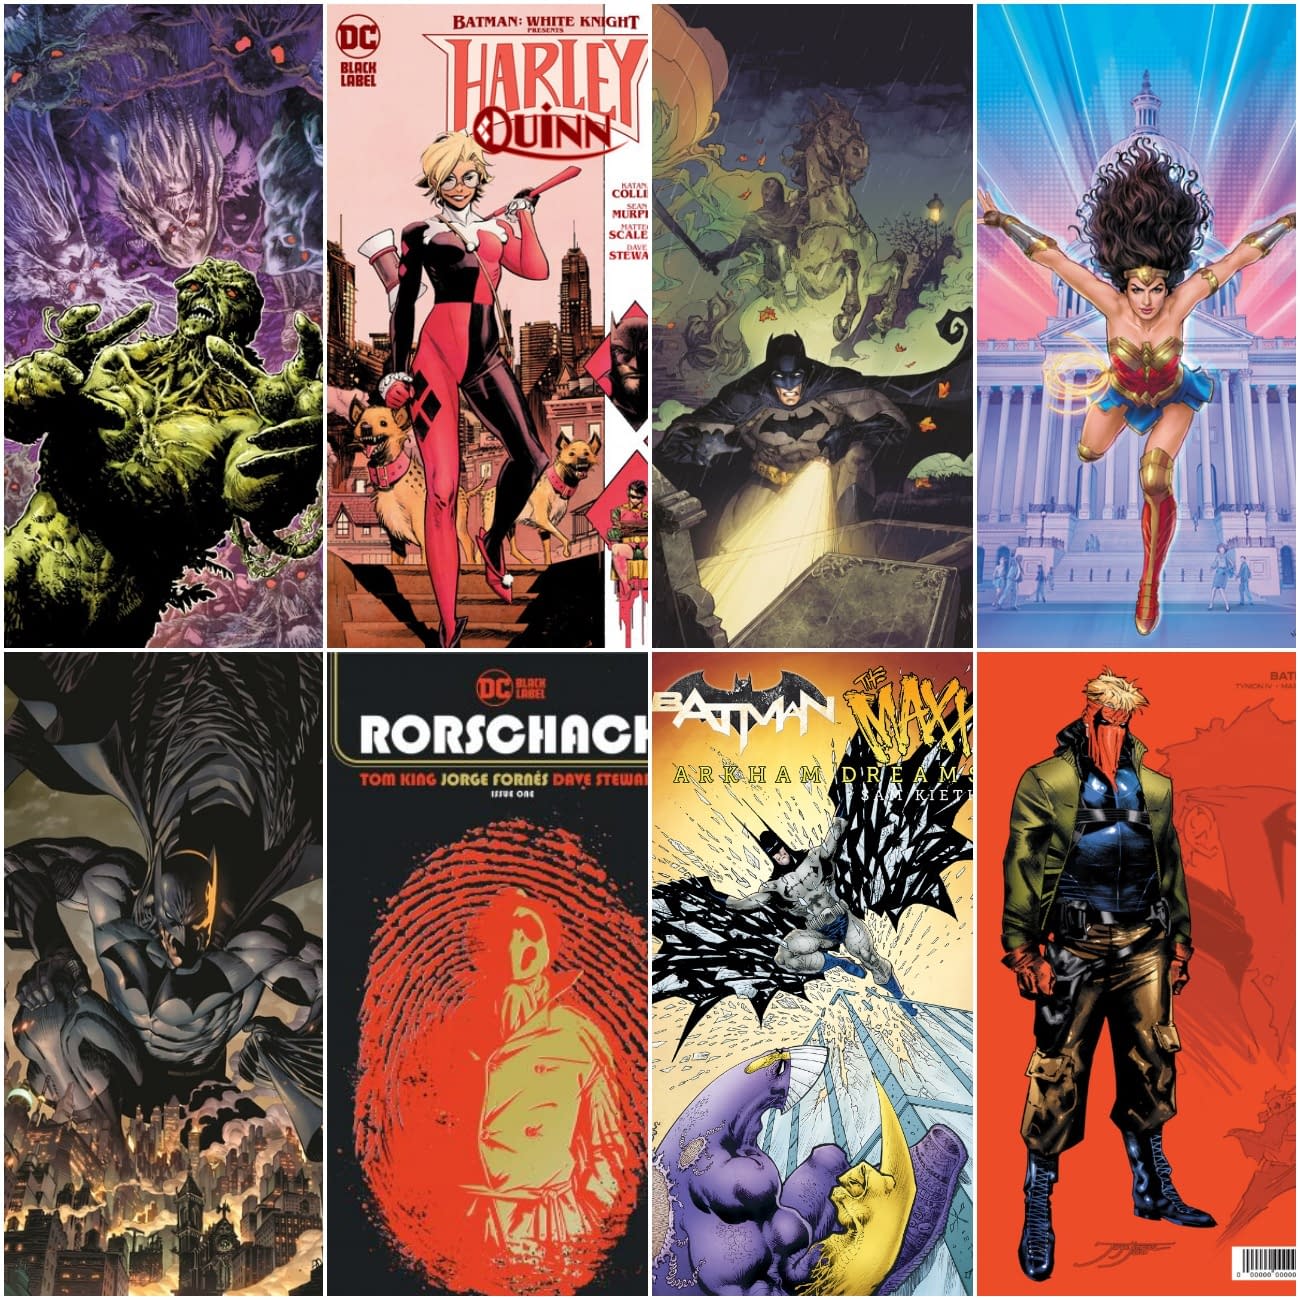 Batman #100, Rorschach #1 Lead DC Comics October 2020 Solicitations